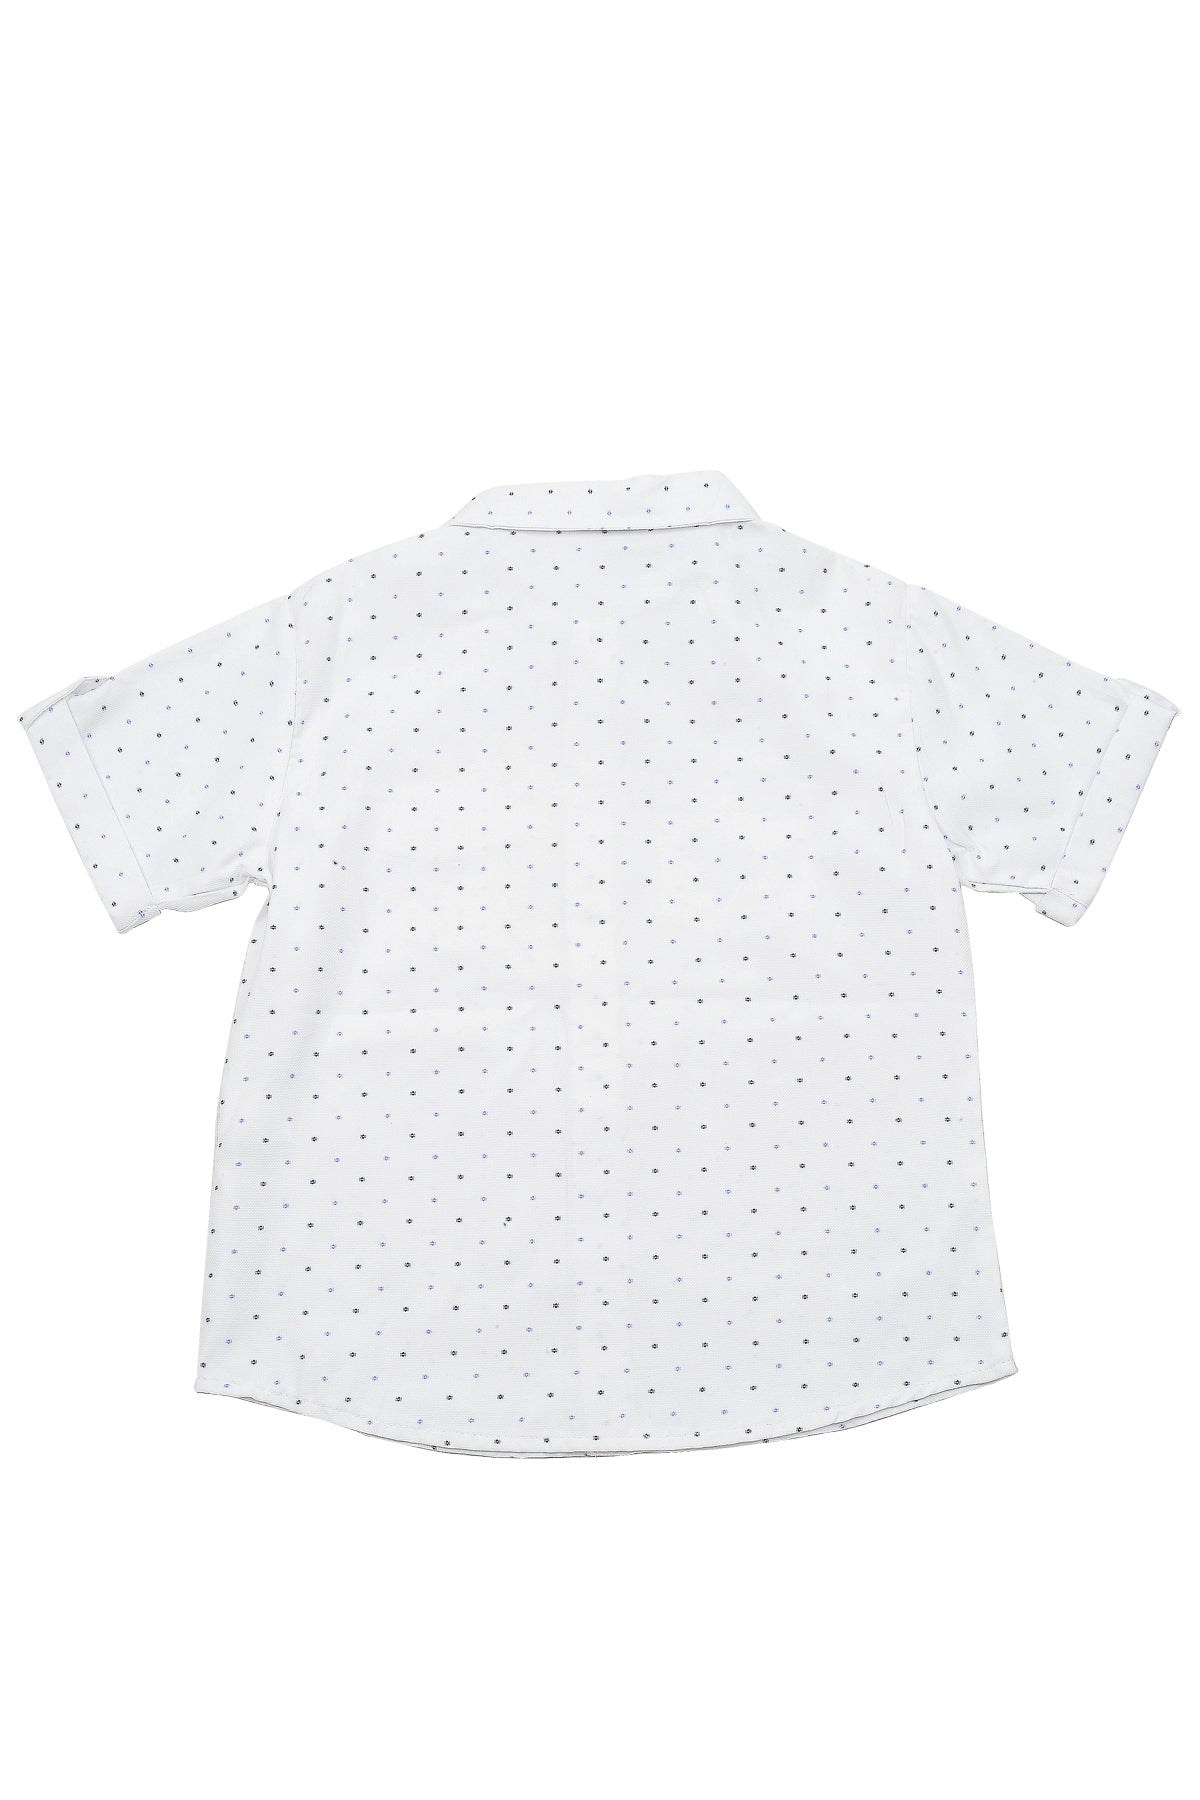 Erkek Çocuk Beyaz Desenli Cepli Marin Gömlek (5-14yaş)-1